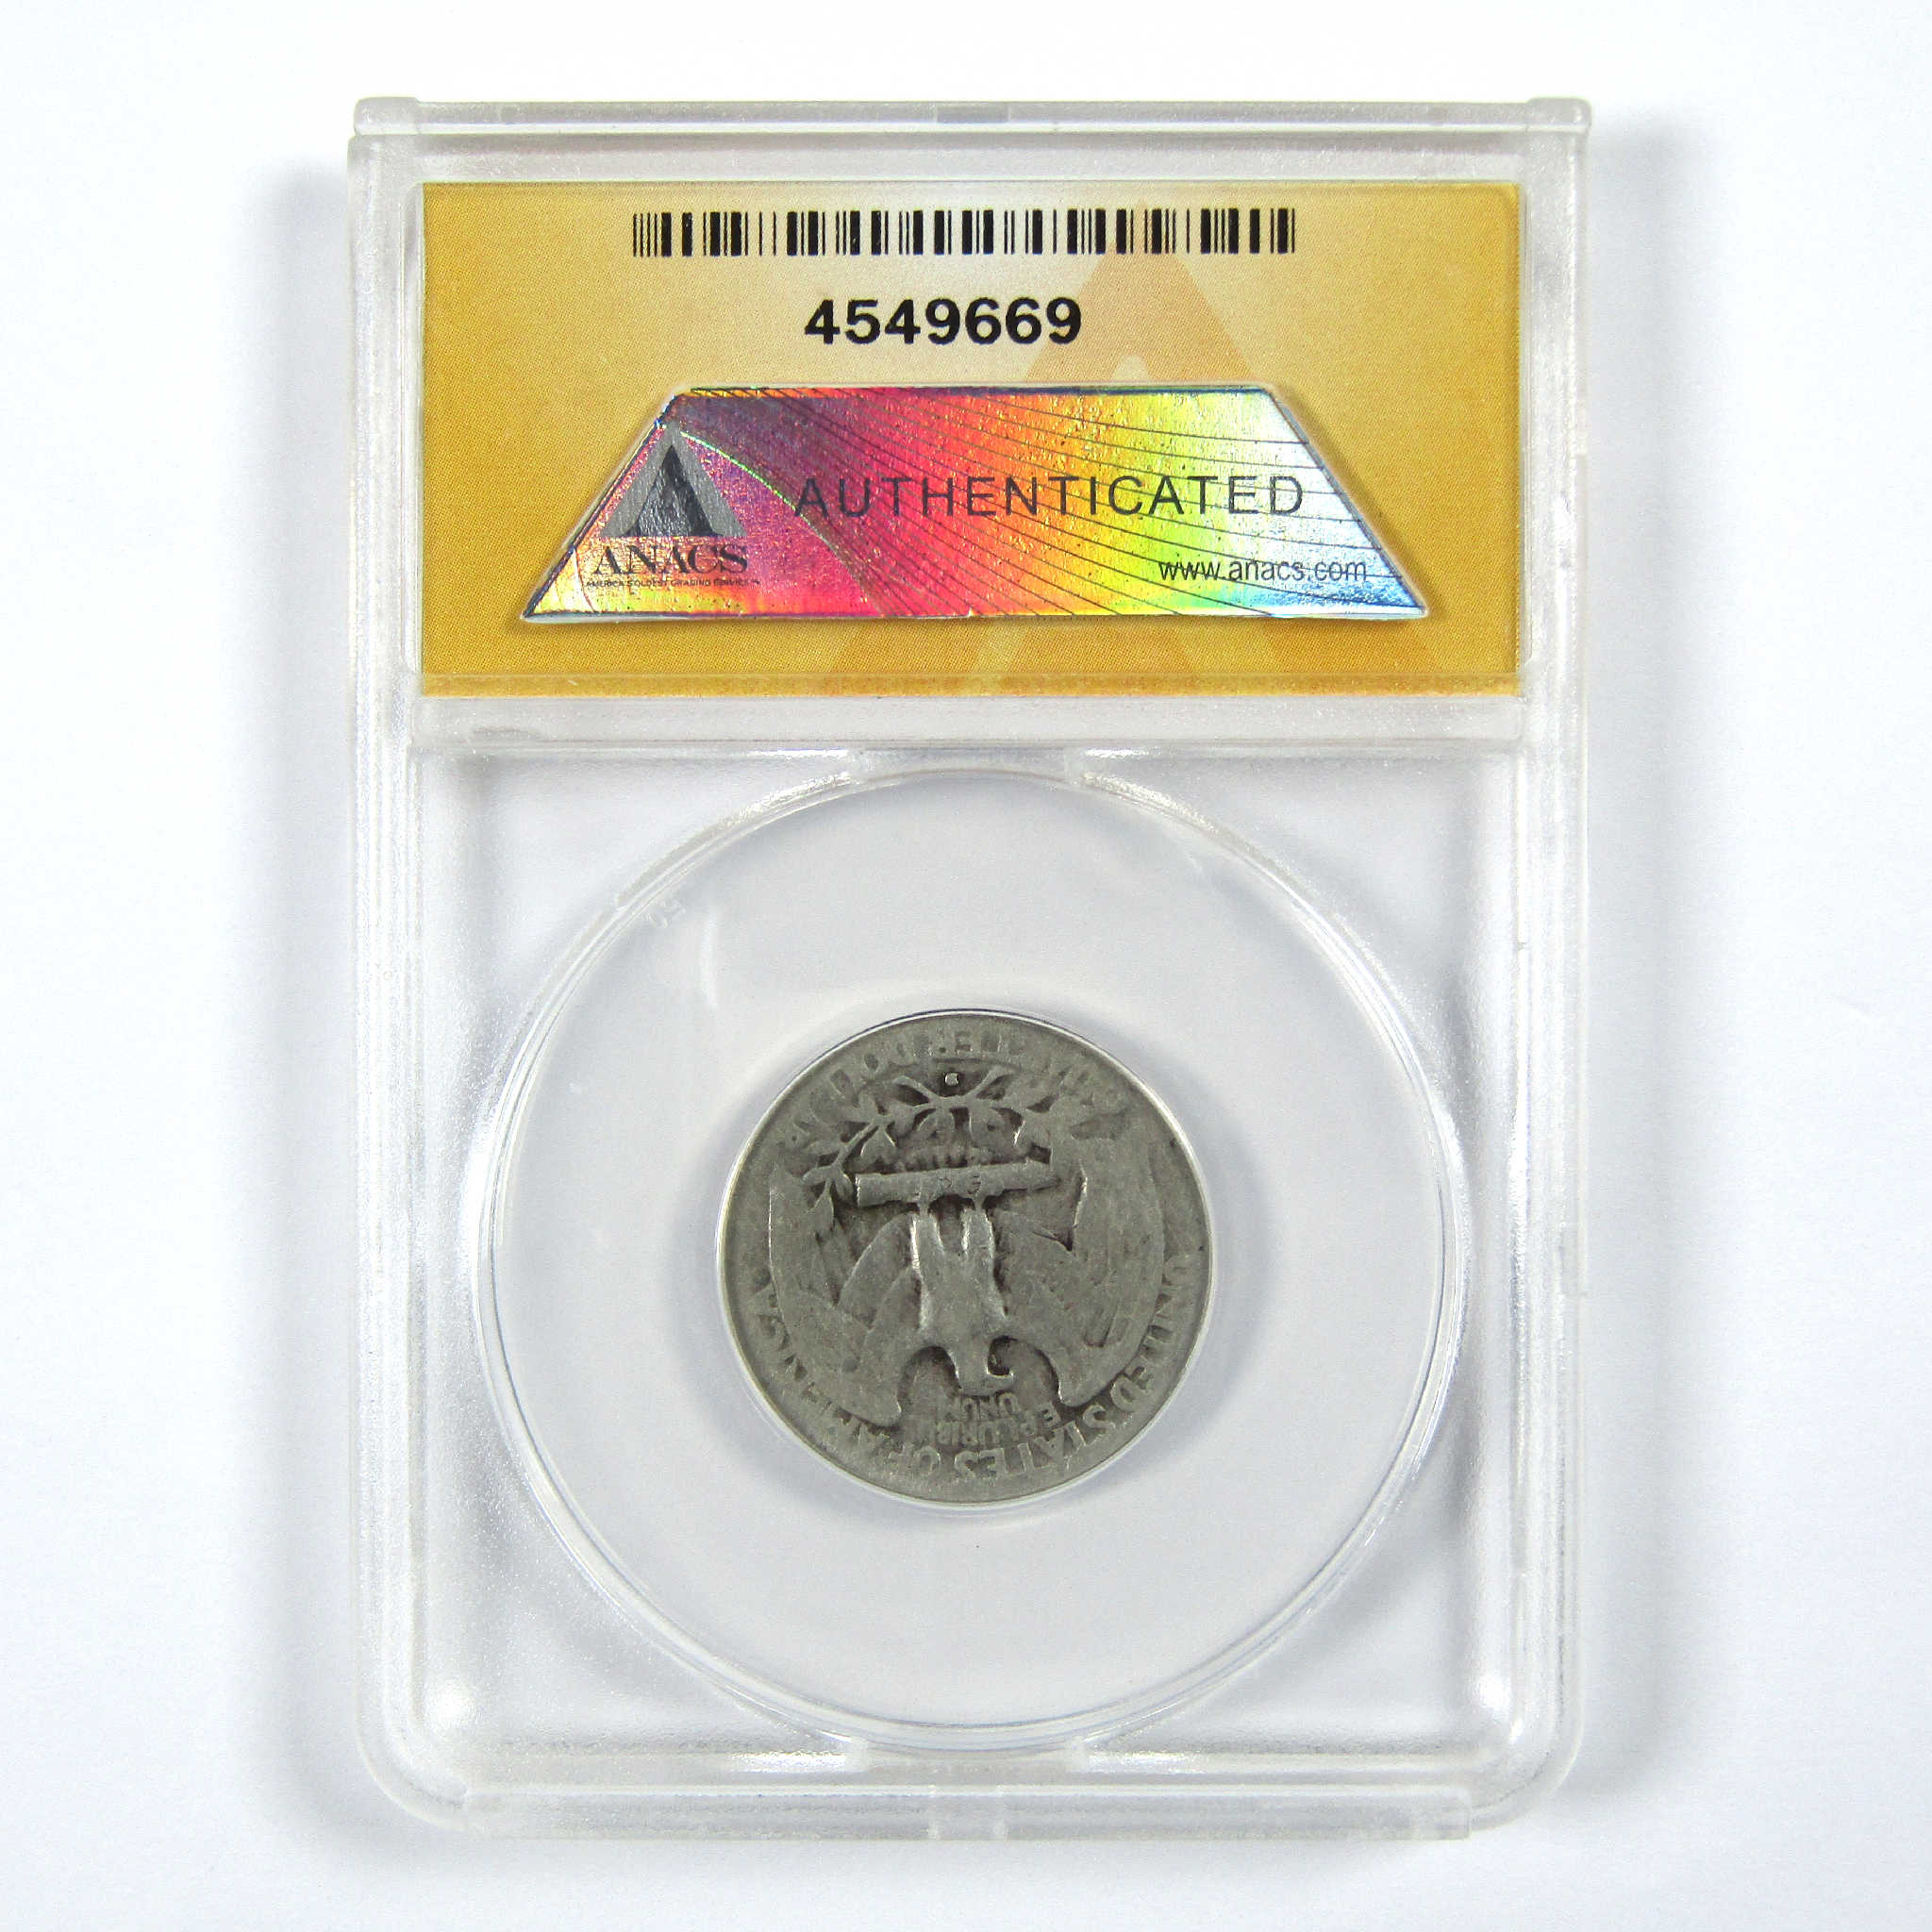 1932 D Washington Quarter G 4 ANACS Silver 25c Coin SKU:I11926